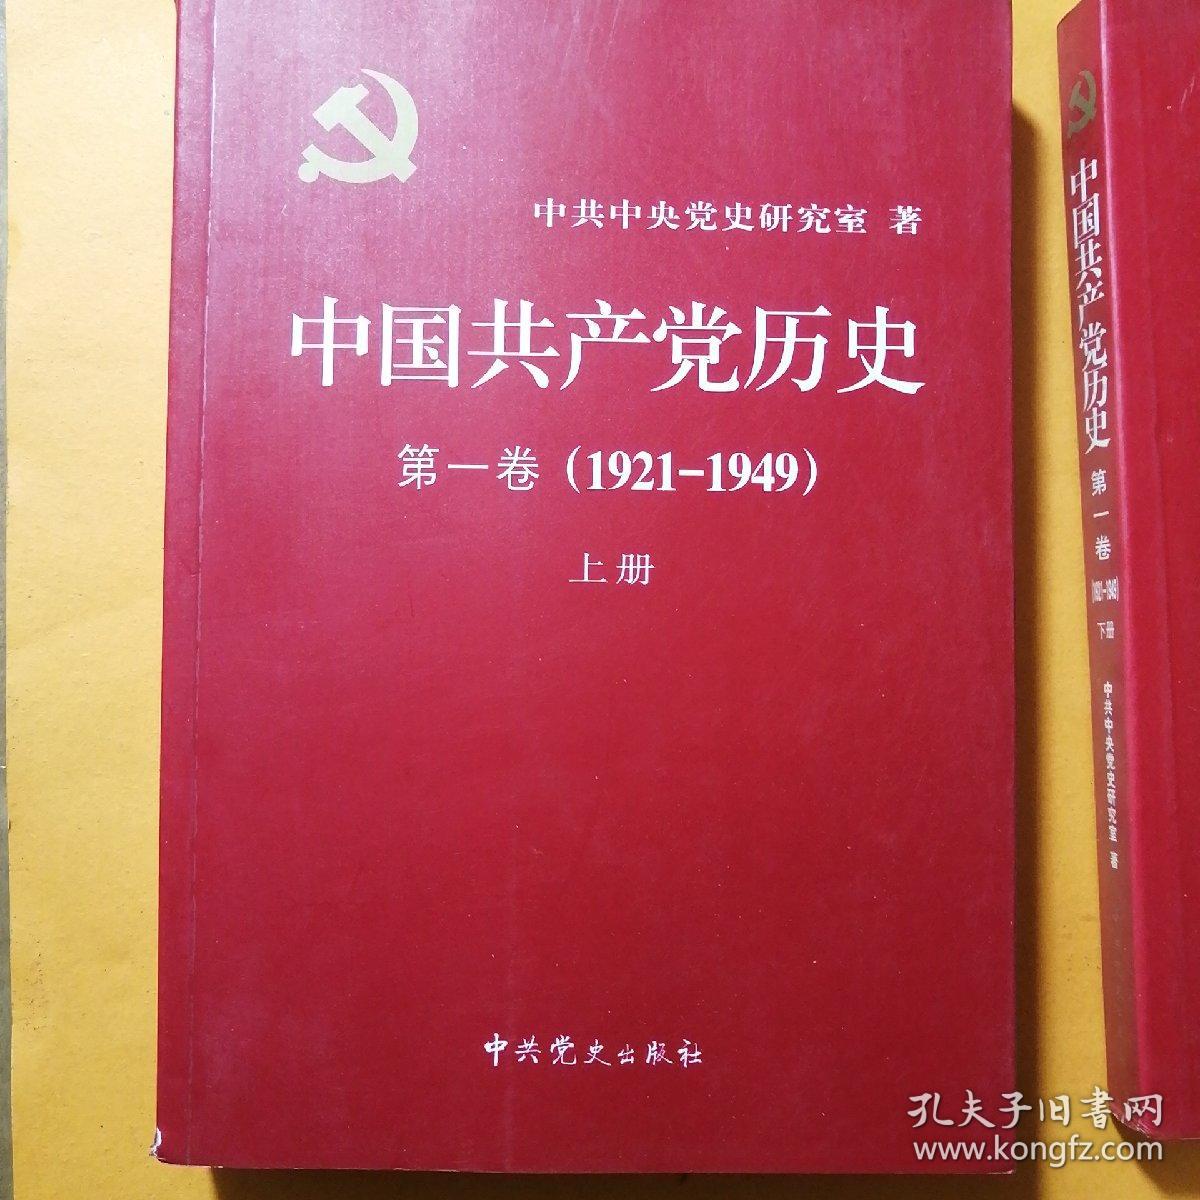 中国共产党历史第一卷上下册第二卷上下册完整